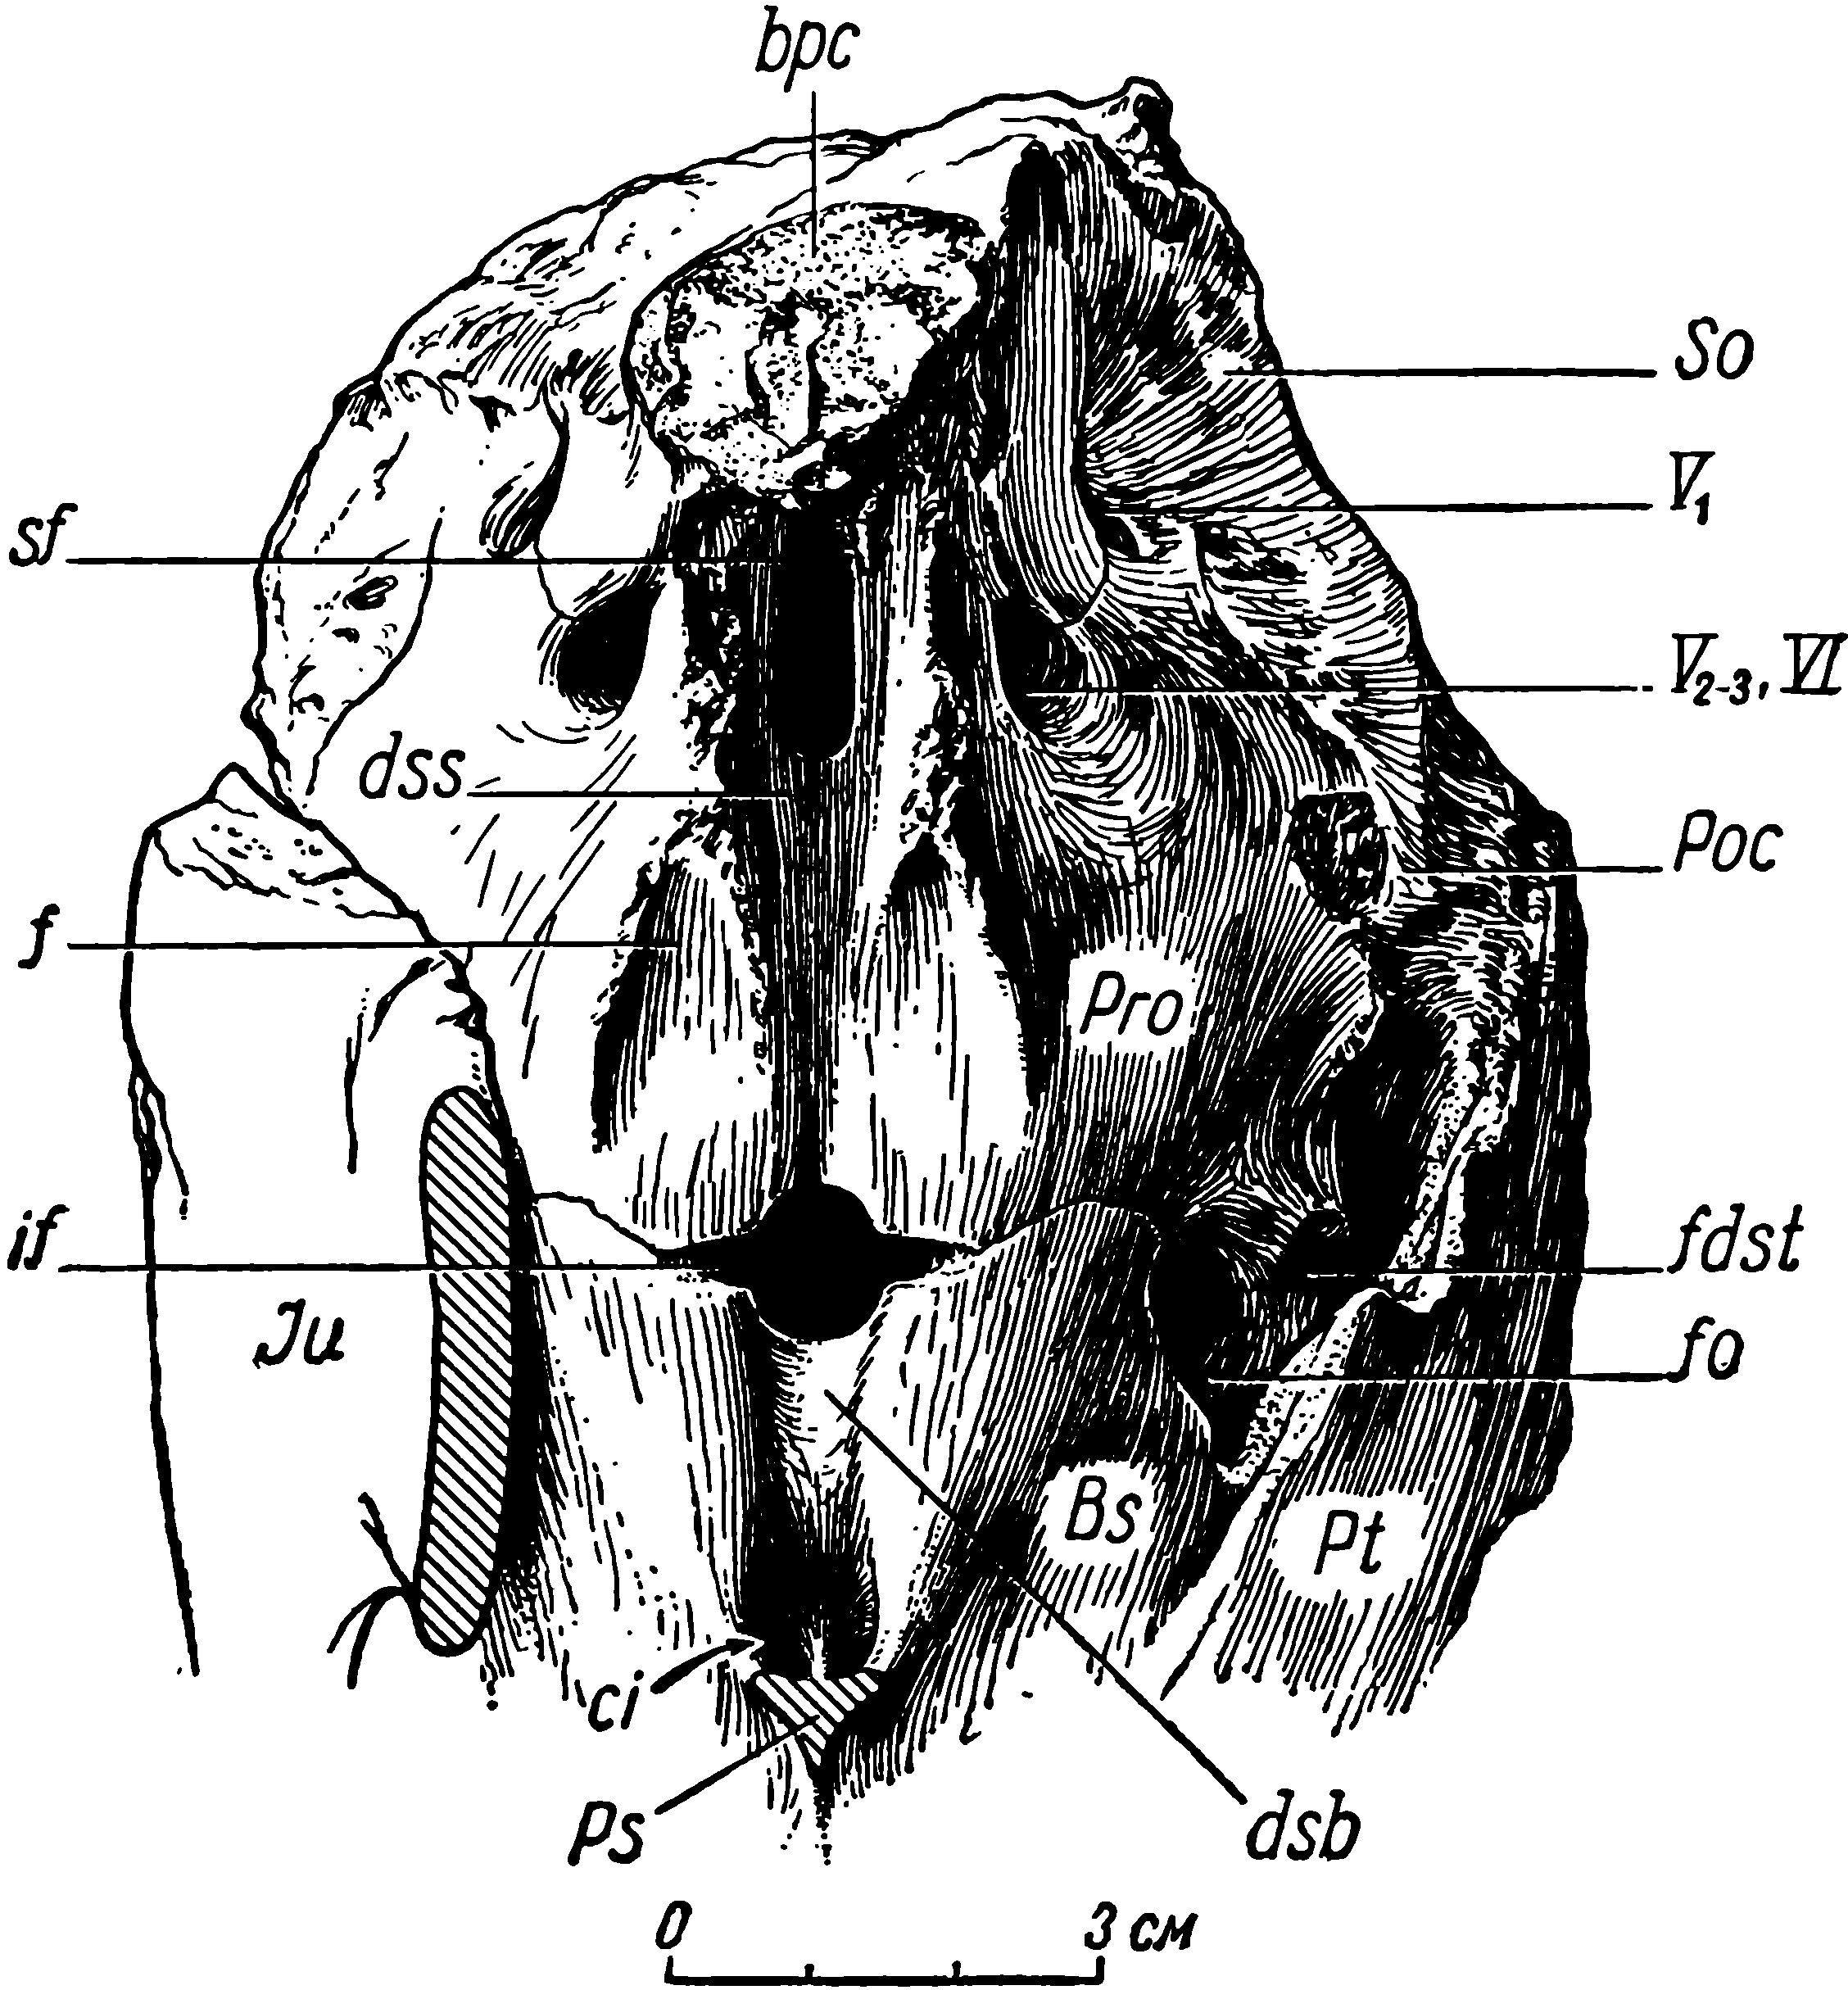 Рис. 11. Deuterosaurus biarmicus Eichw. Мозговая коробка черепа ЛГМ/ЧМП № 1 спереди и сверху. Посторбитальная перегородка и парасфеноид мысленно сняты. Обозначения см. рис. 3, 6, 9, 10; кроме того: ci — отверстия сонных артерий (f. carotis internae); dsb — dorsum sellae basisphenoidei; dss — dorsum sellae prooticum; if — infundibulum; bpc — основание канала пинеального органа; f — ямки для прикрепления задних сторон epipterygoideum; sf — мозговое отверстие